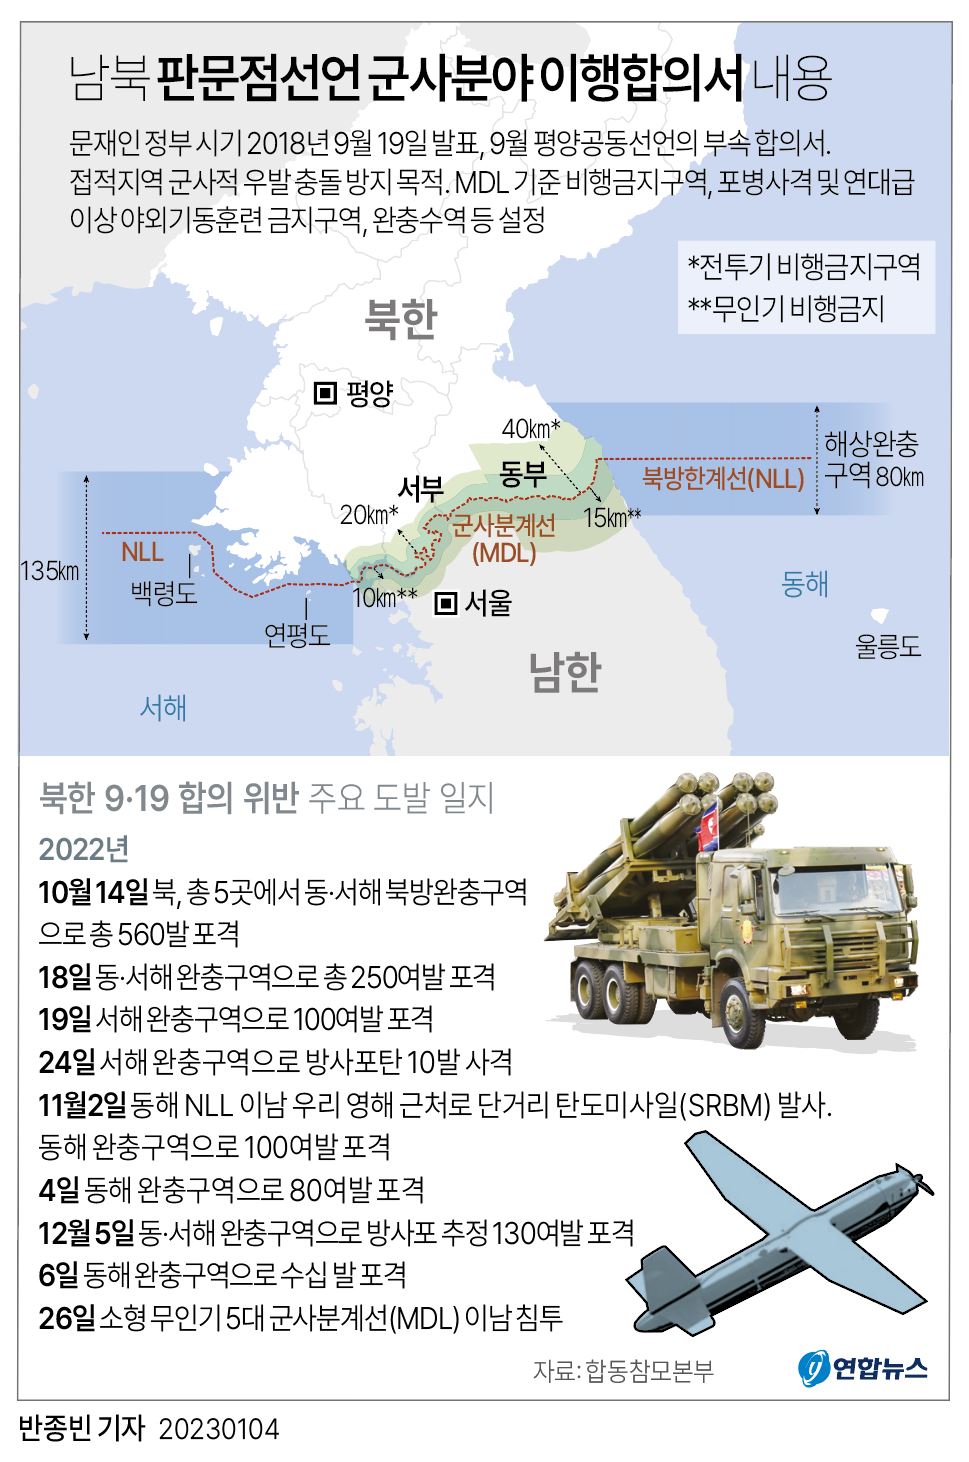 [그래픽] 남북 판문점선언 군사분야 이행합의서 내용